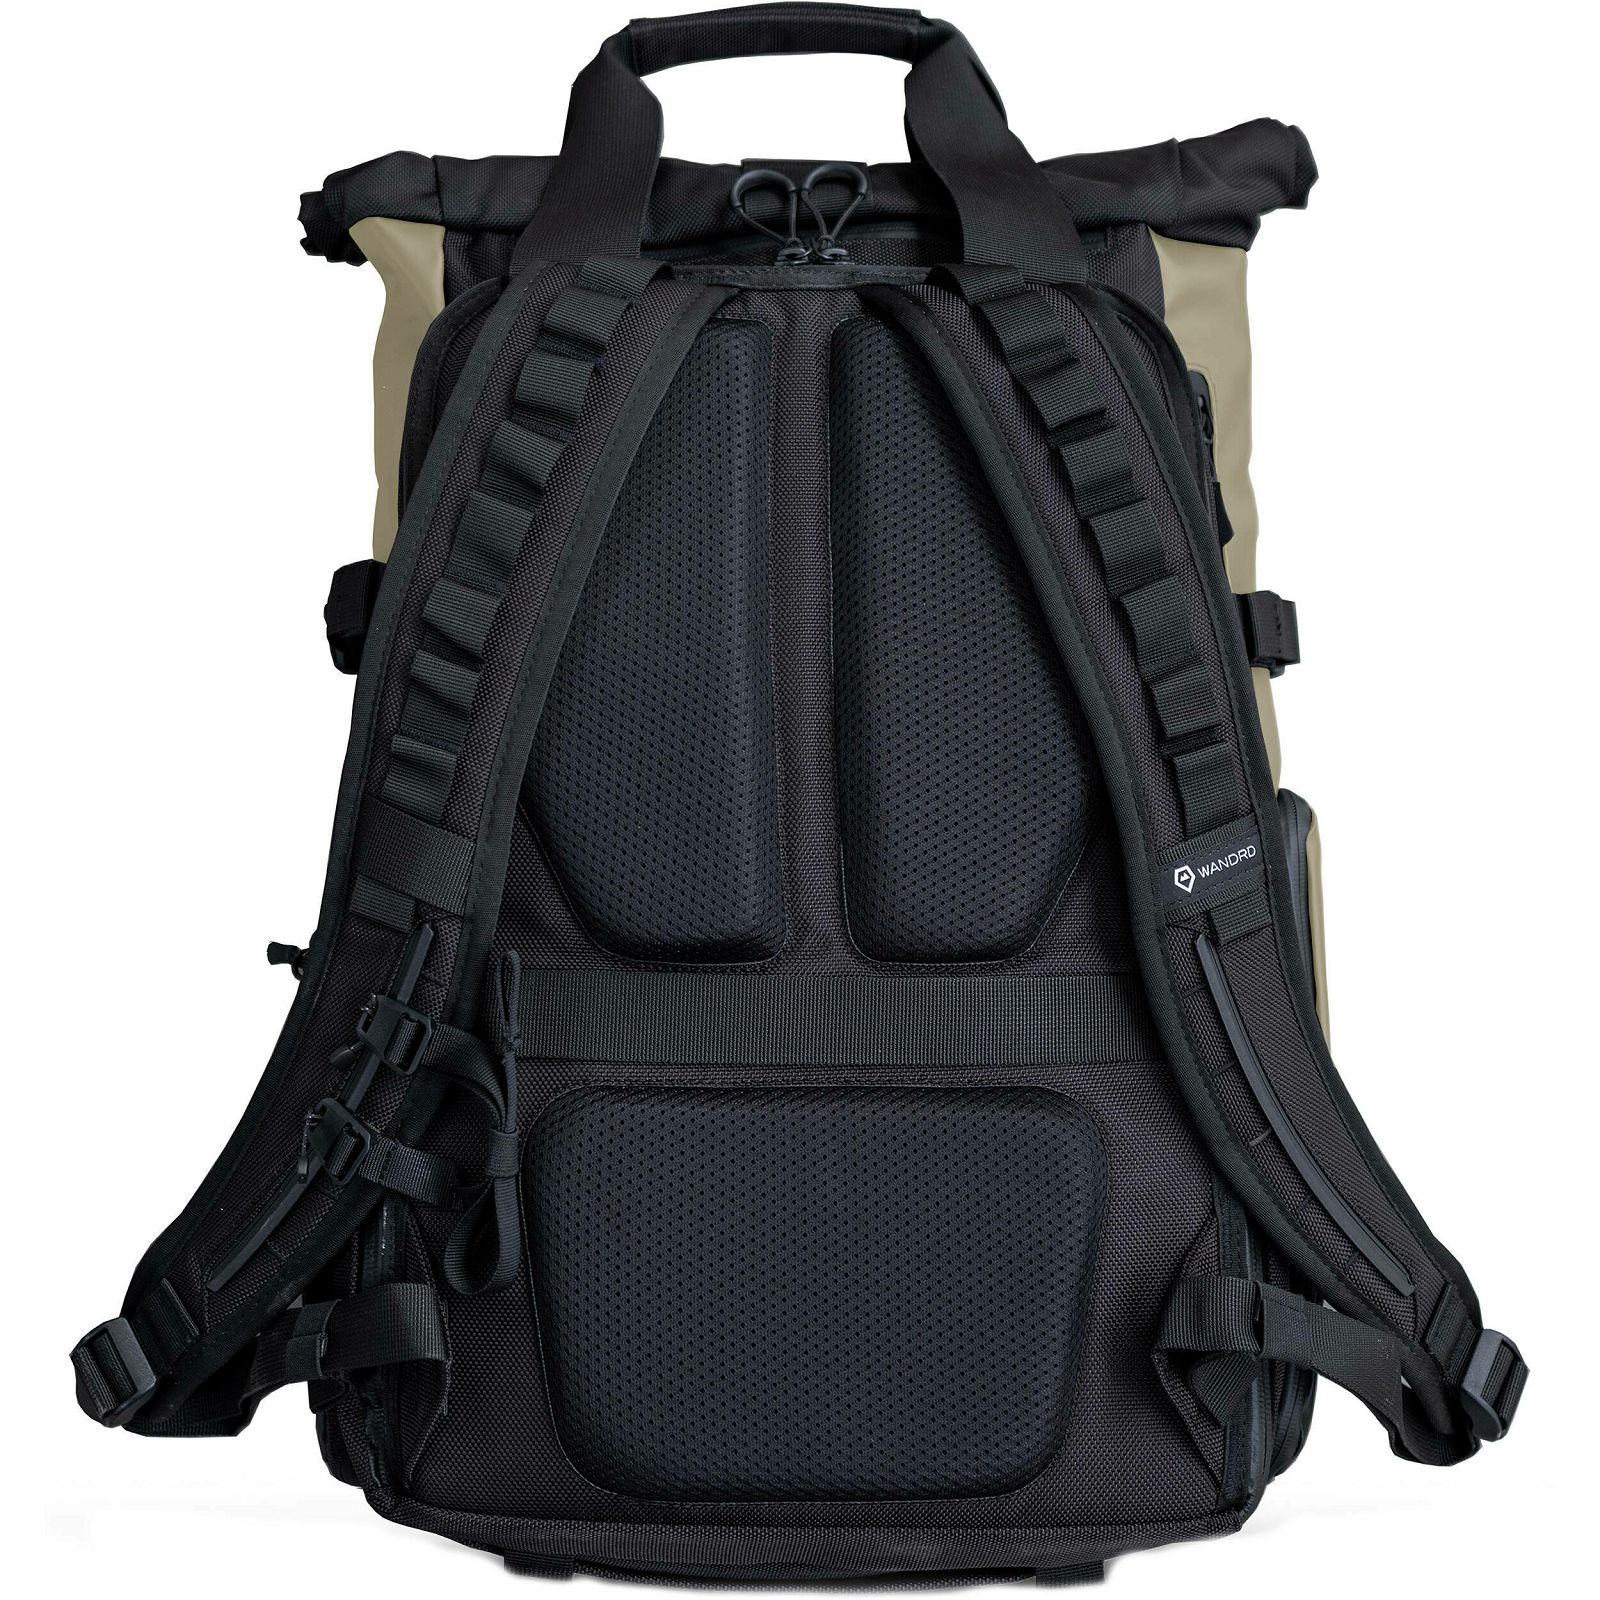 Wandrd Prvke 31L V3 Yuma Tan Backpack ruksak za foto opremu (PK31-TA-3)